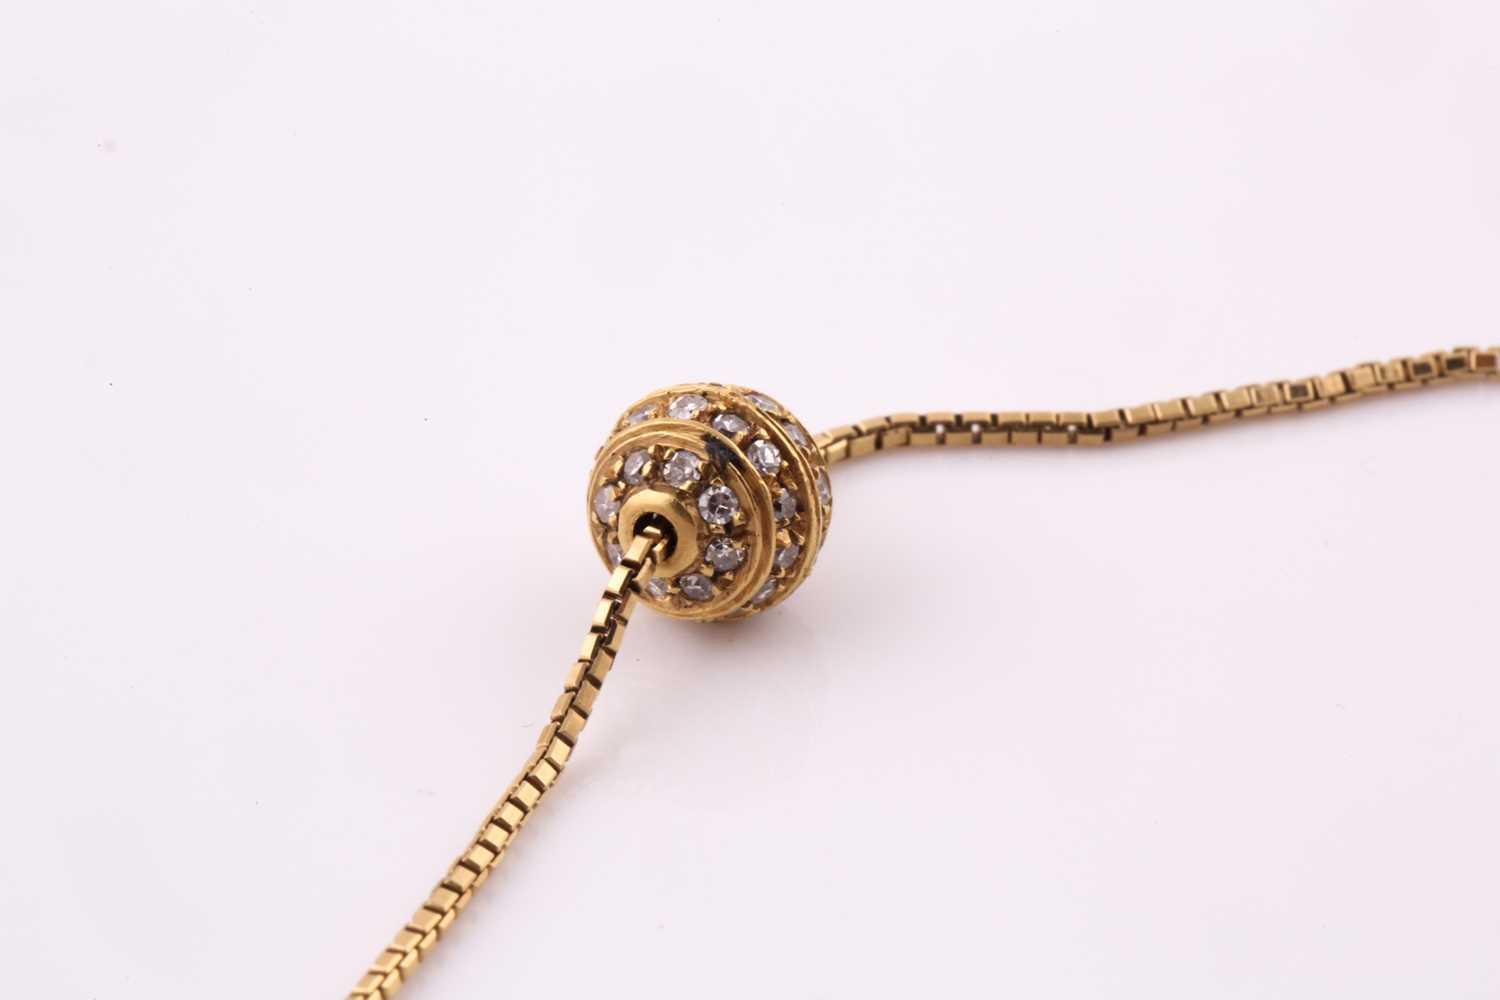 A diamond pavé set spherical pendant necklace, in 18ct yellow gold, pendant 0.8cm diameter, chain - Bild 5 aus 5